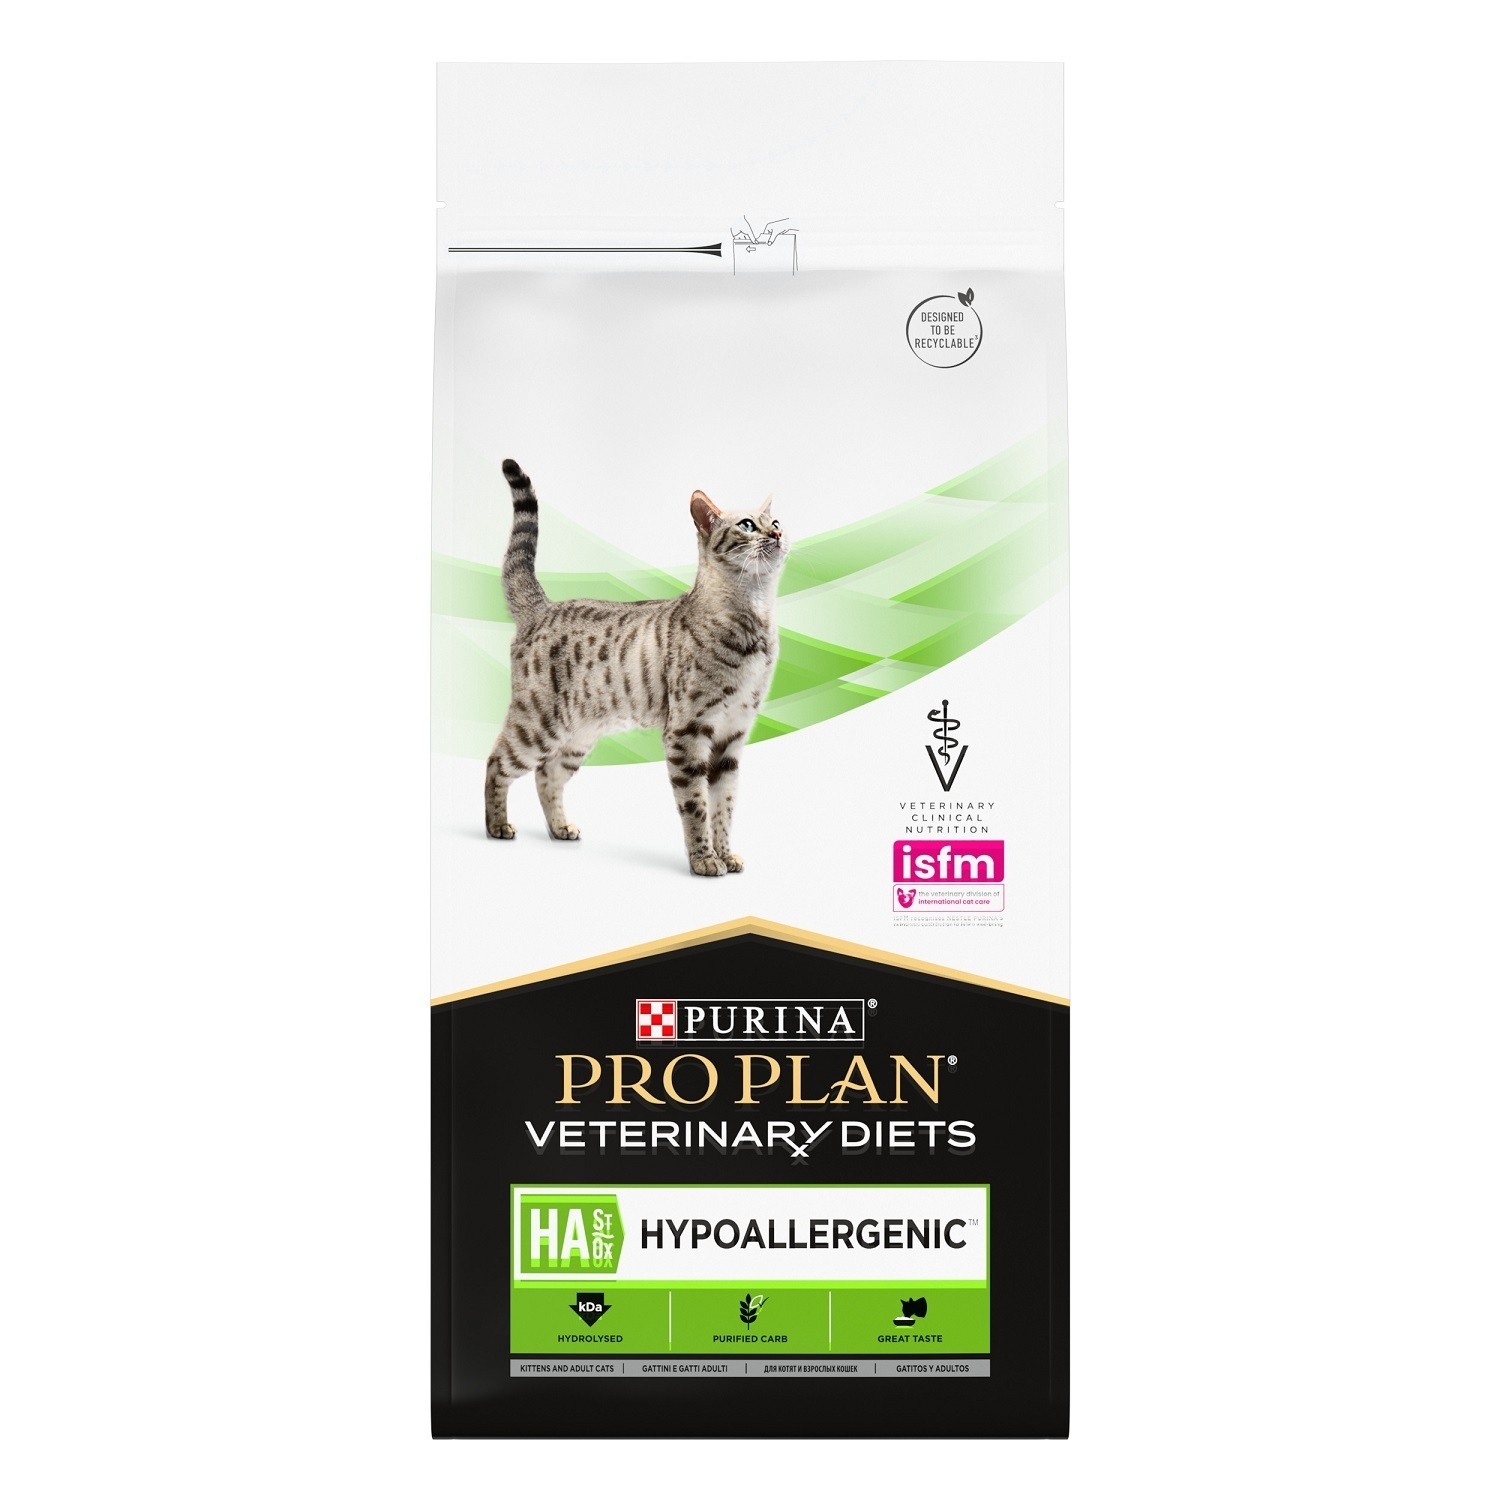 Purina (вет. корма) Purina (вет. корма) для котят и взрослых кошек для снижения пищевой непереносимости ингредиентов и питательных веществ (325 г) цена и фото